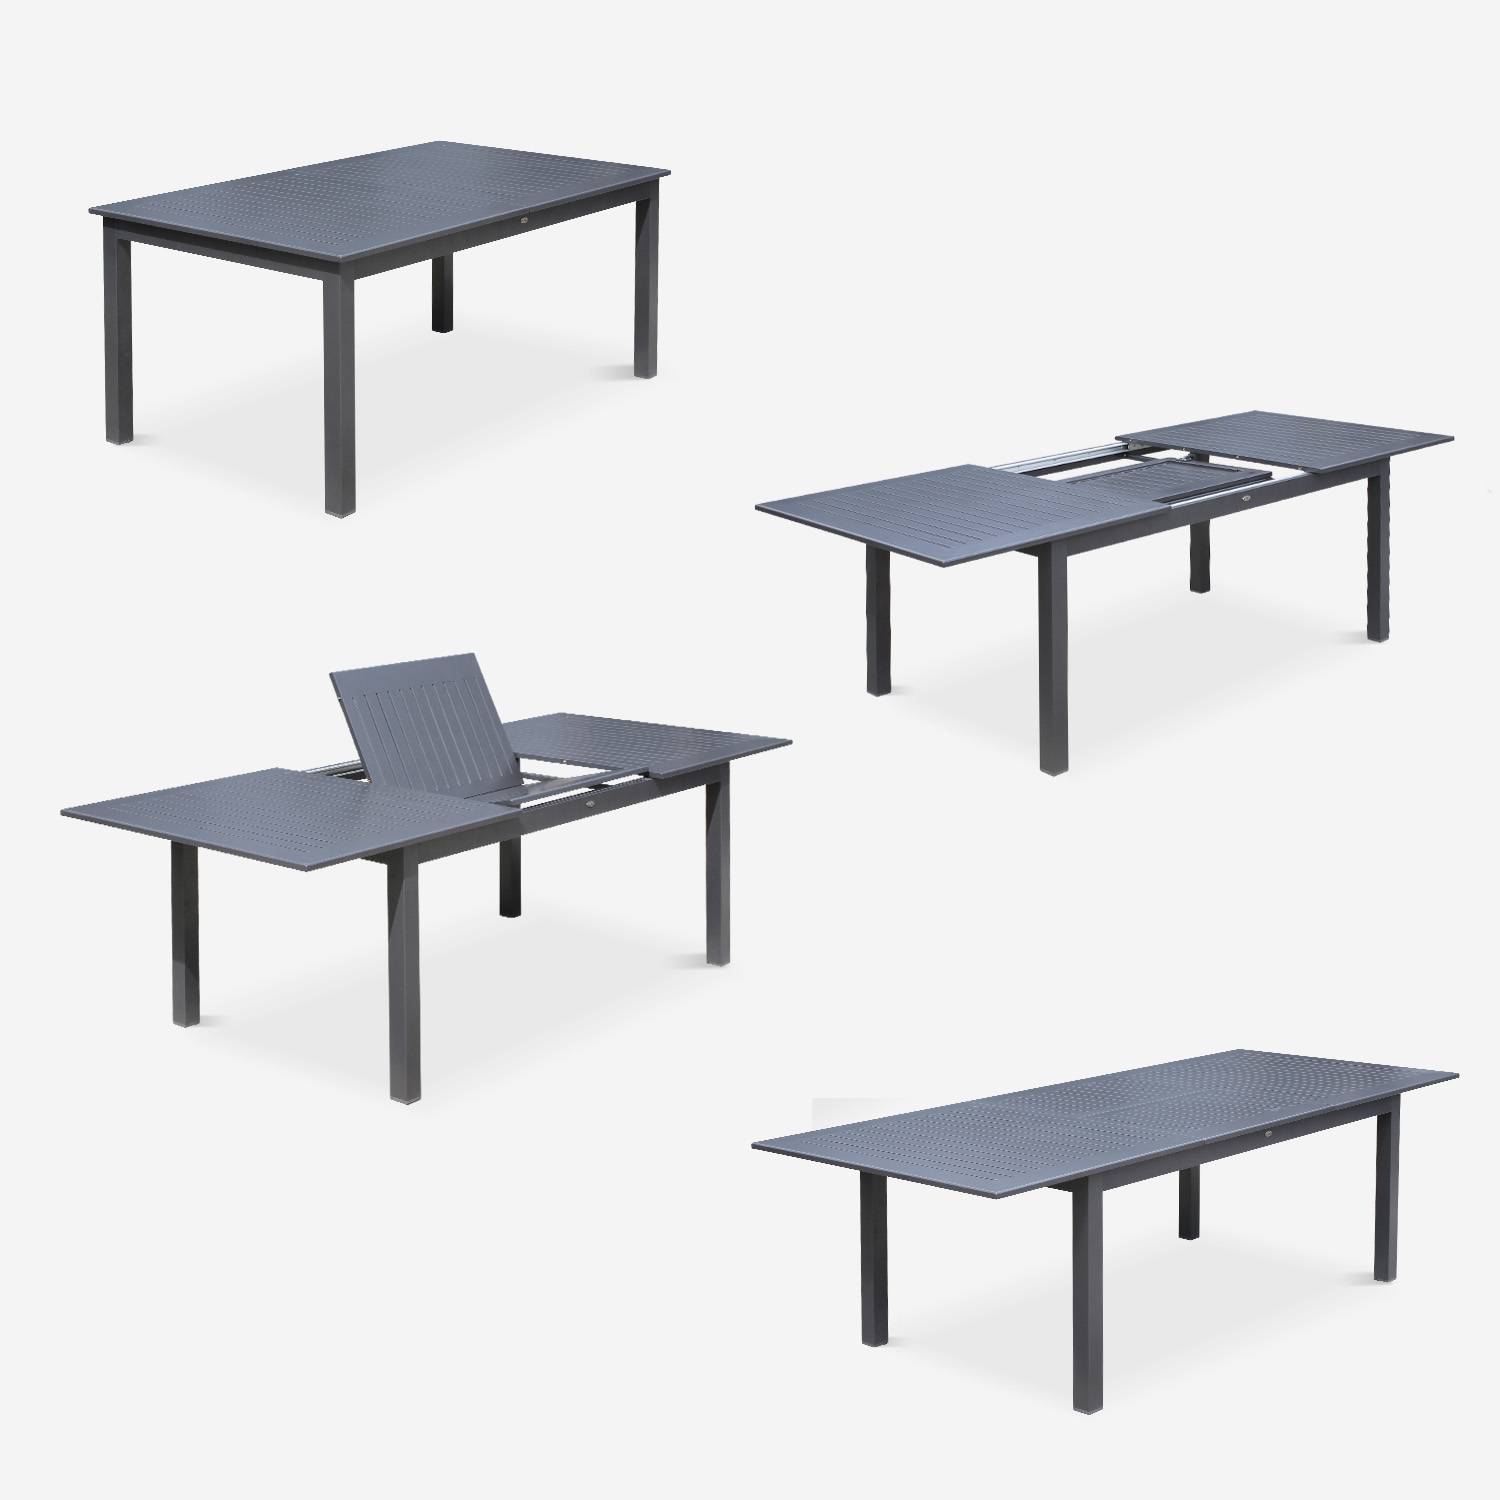 Set da giardino con tavolo allungabile - modello: Chicago, colore: Antracite - Tavolo in alluminio, dimensioni: 175/245cm con prolunga e 8 sedute in textilene Photo6